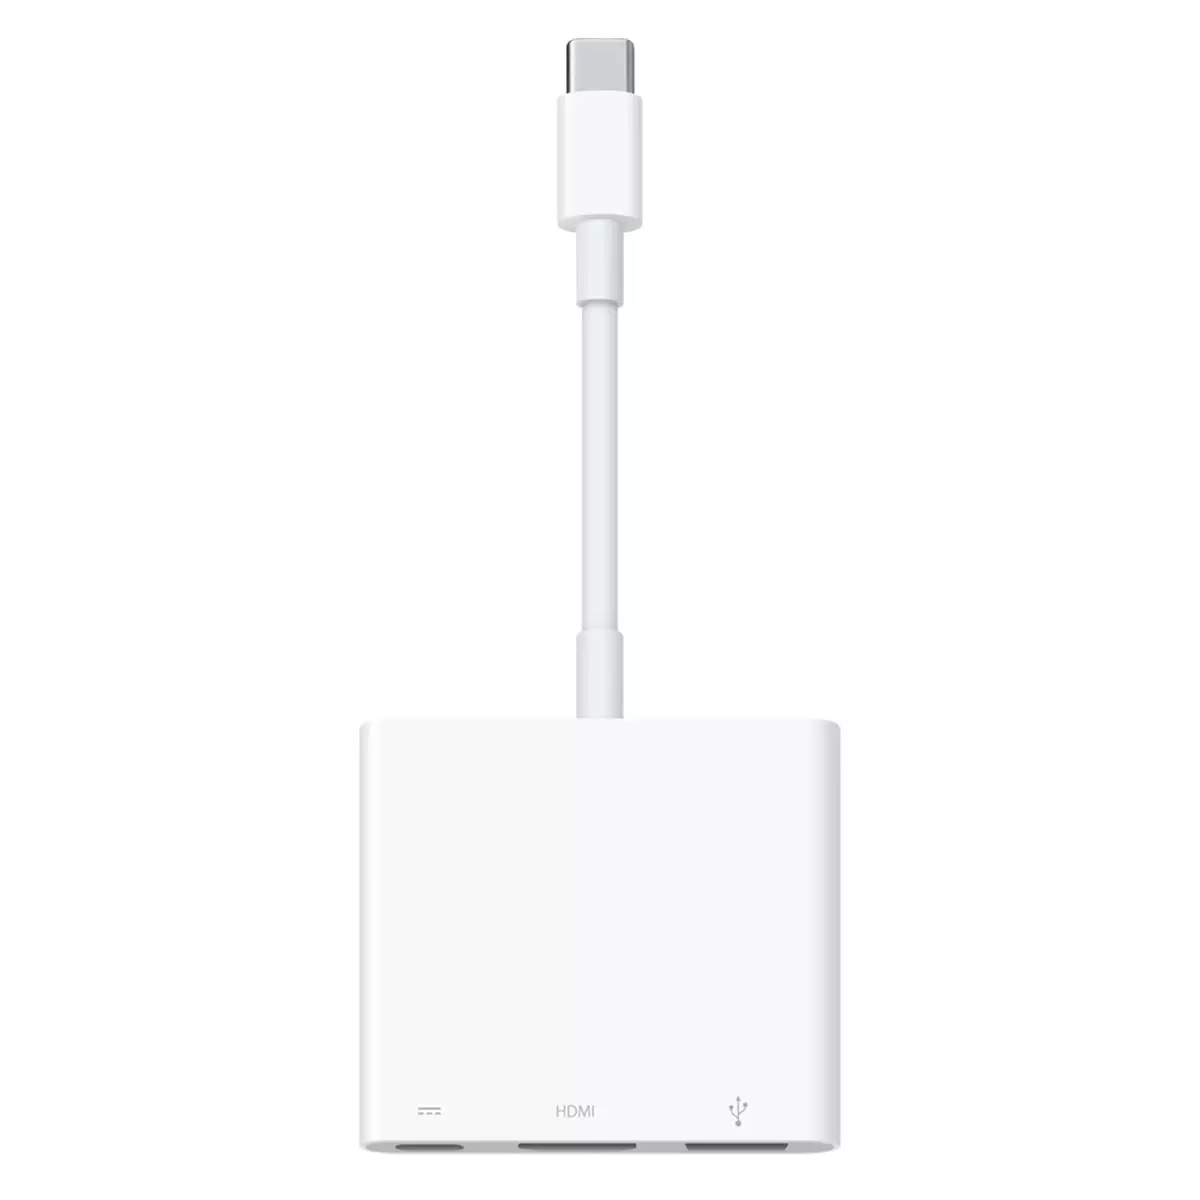 Buy Apple USB-C Digital AV Multiport Adapter, MUF82ZM/A at costco.co.uk